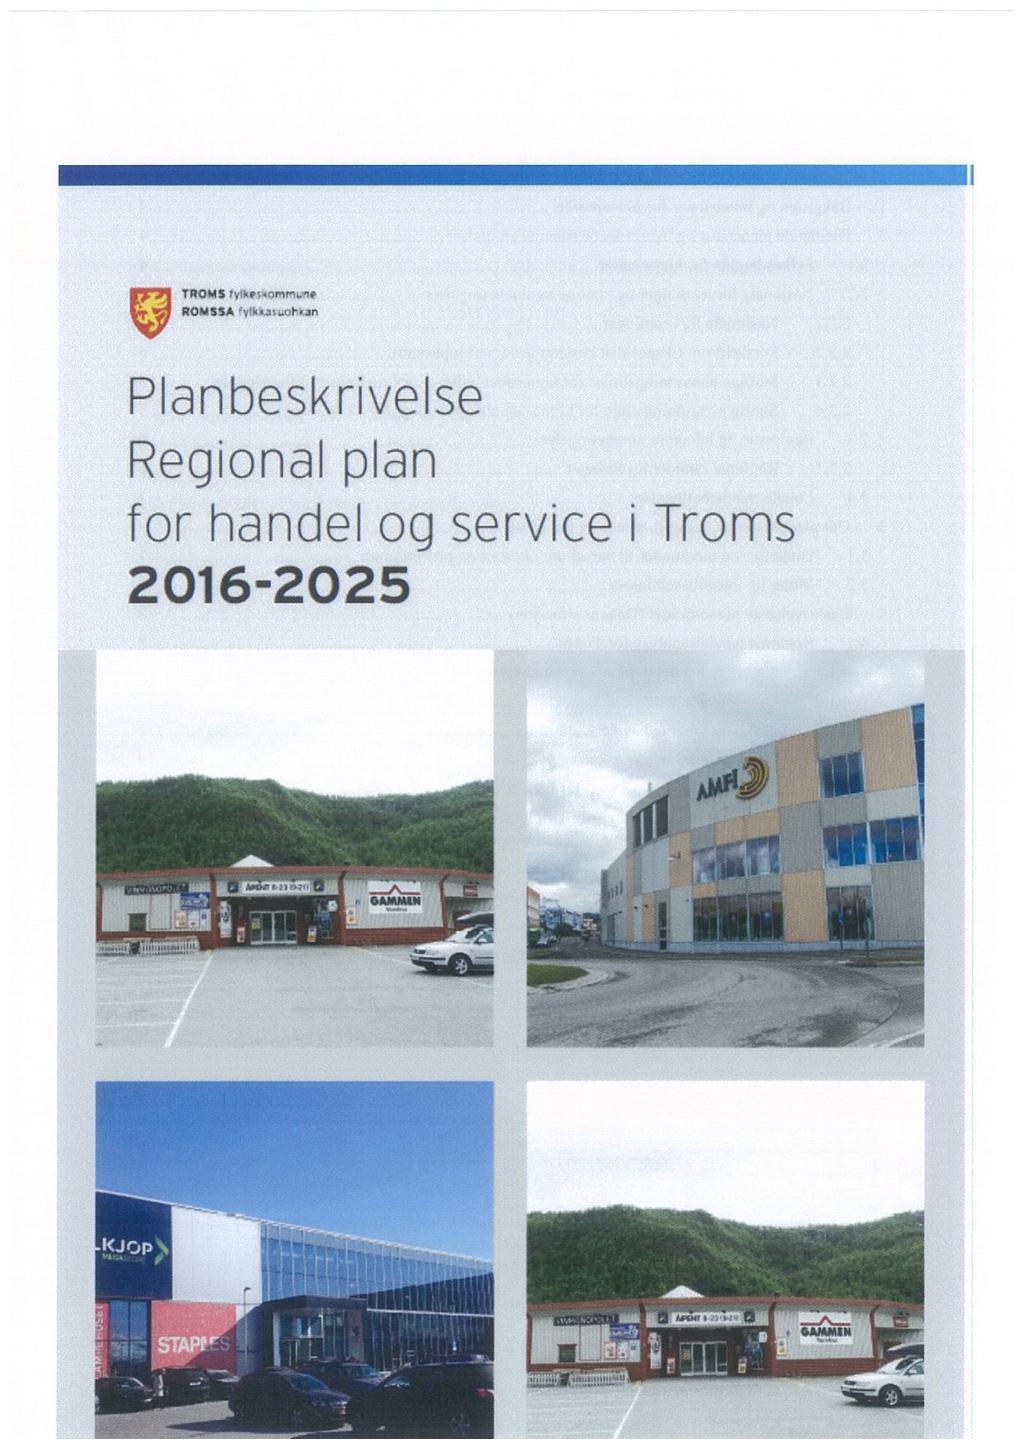 g; ;::::::::.::;::: Planbeskrivelse Regional plan for handel og service i Troms 2016-2025» = 4? : u ', 4.